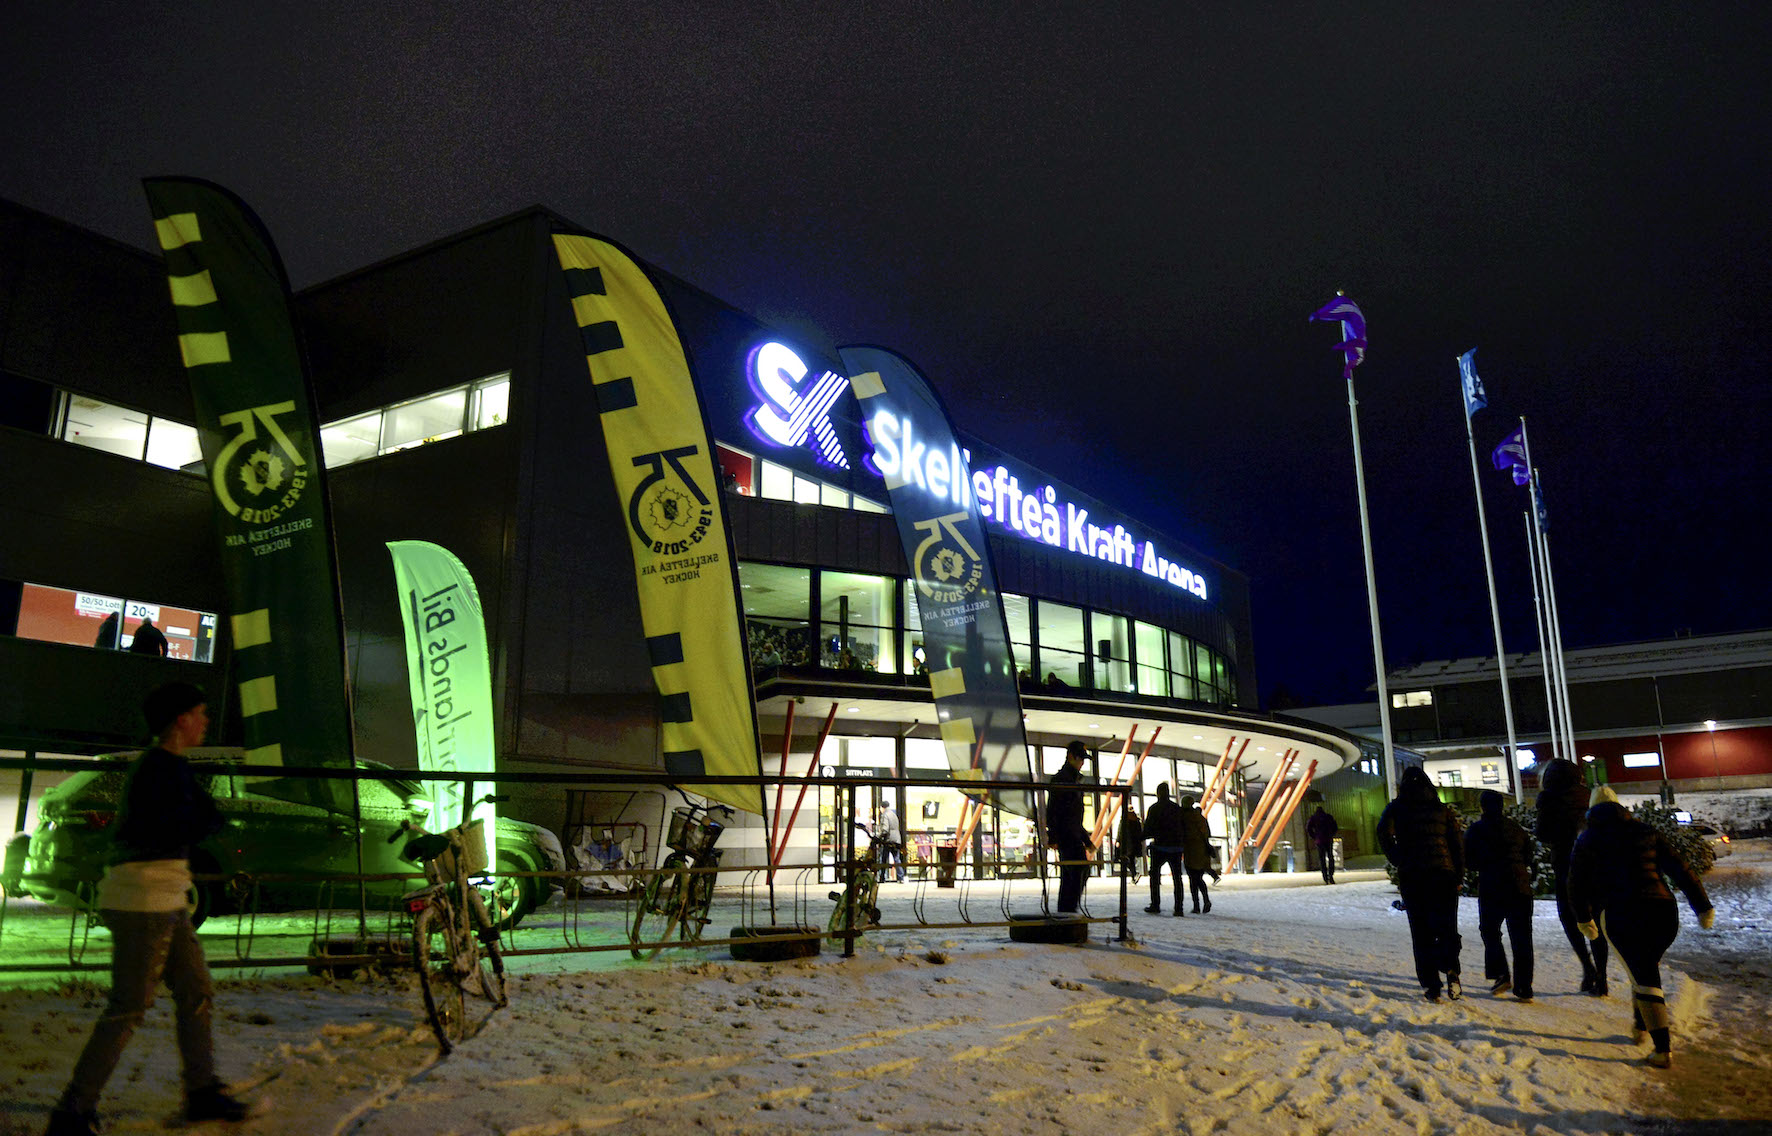 Skellefteå Kraft Arena.